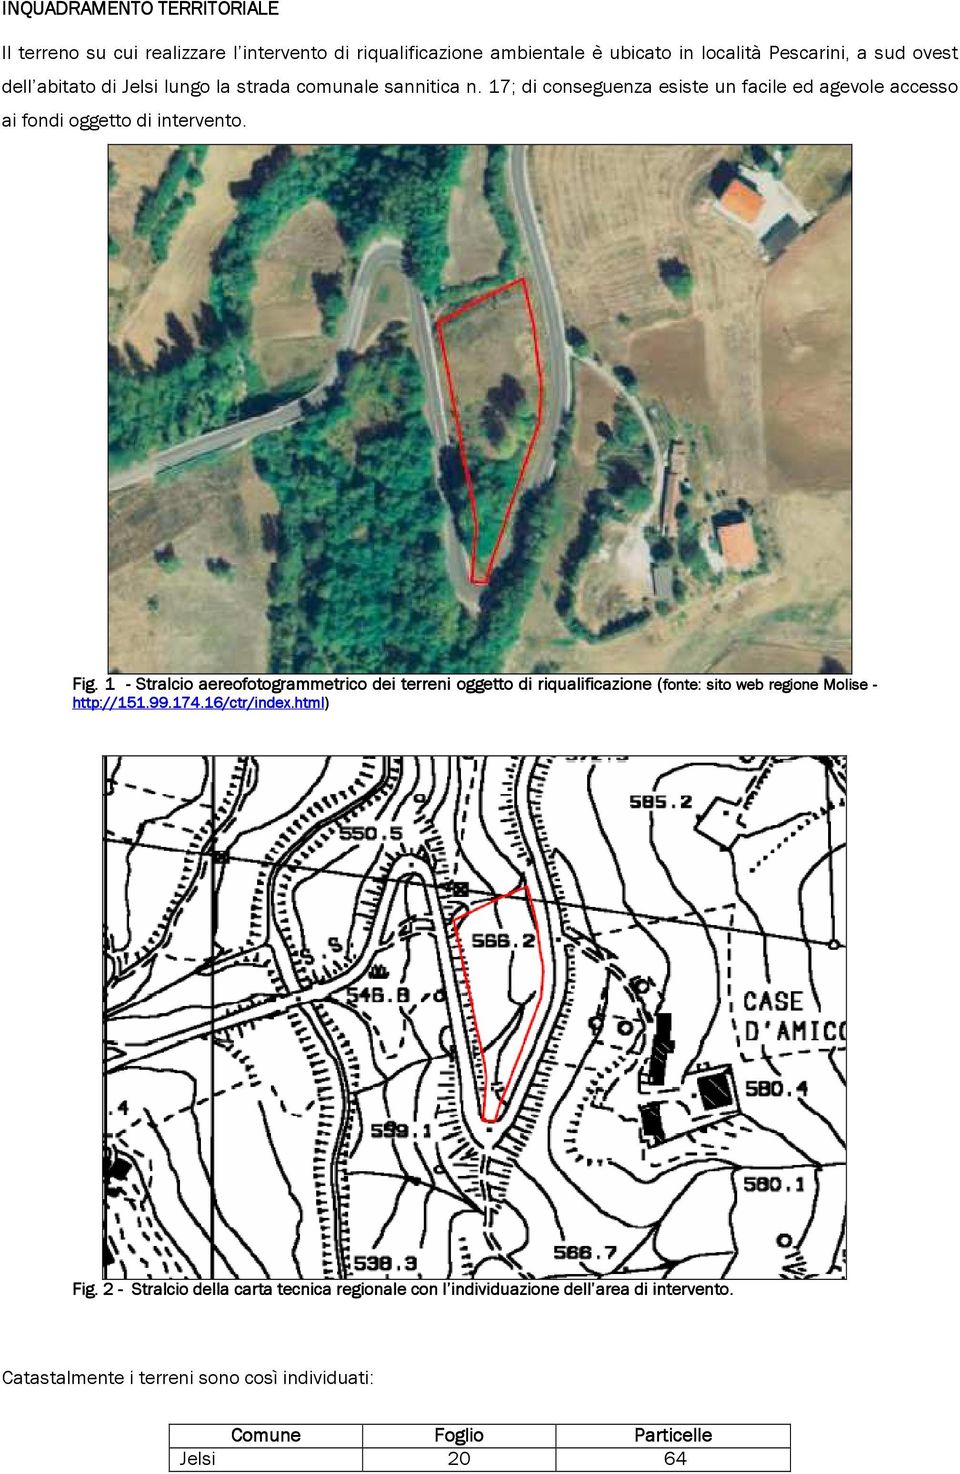 1 - Stralcio aereofotogrammetrico dei terreni oggetto di riqualificazione (fonte: ( sito web regione Molise - http://151.99.174.16/ctr/index.html x.